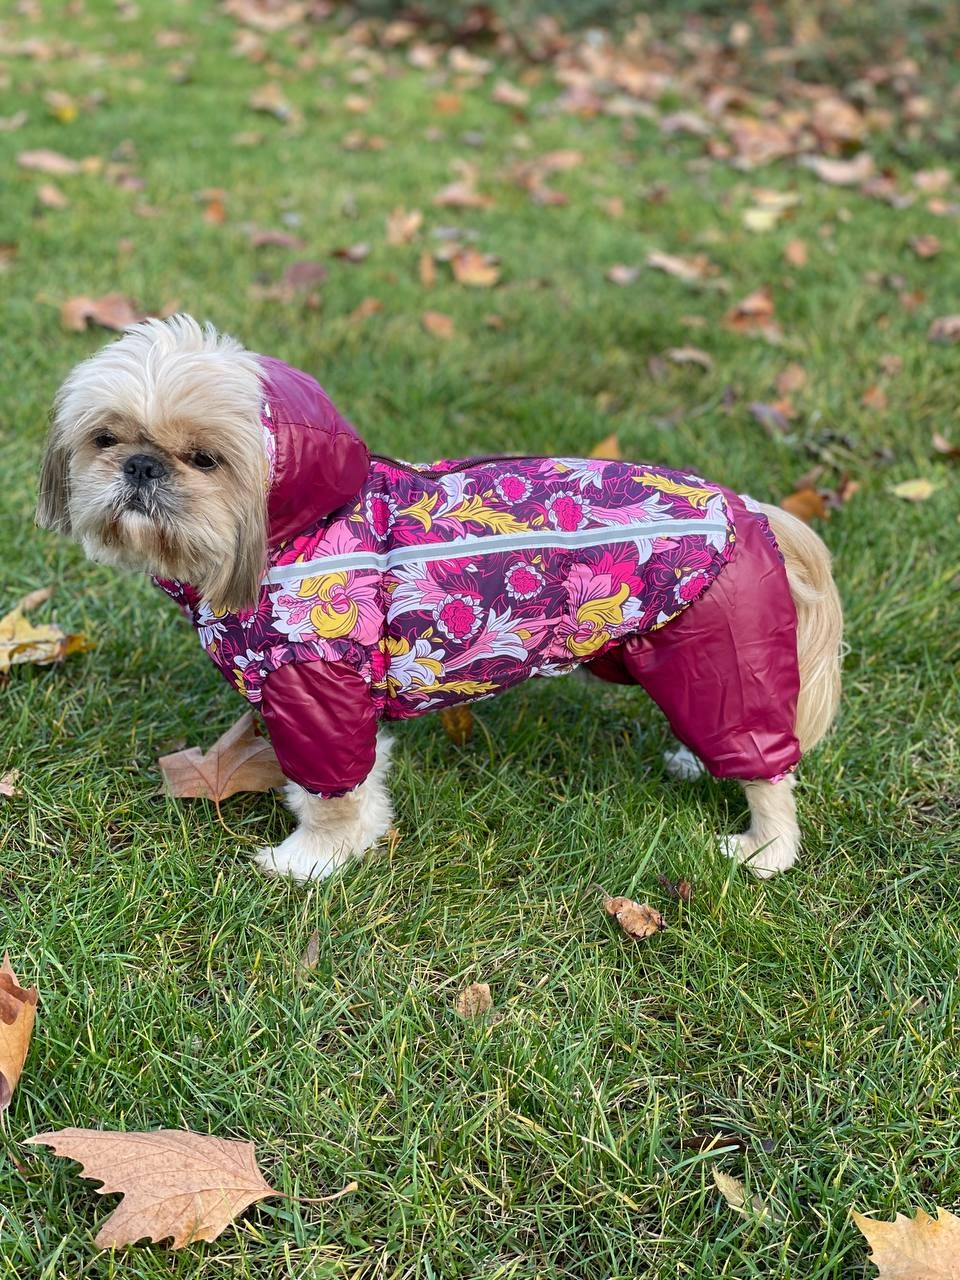 Набор Фрезия жилет силикон + комбинезон велсофт бордо (девочка)  -  Одежда для собак -   Для кого: Девочка  